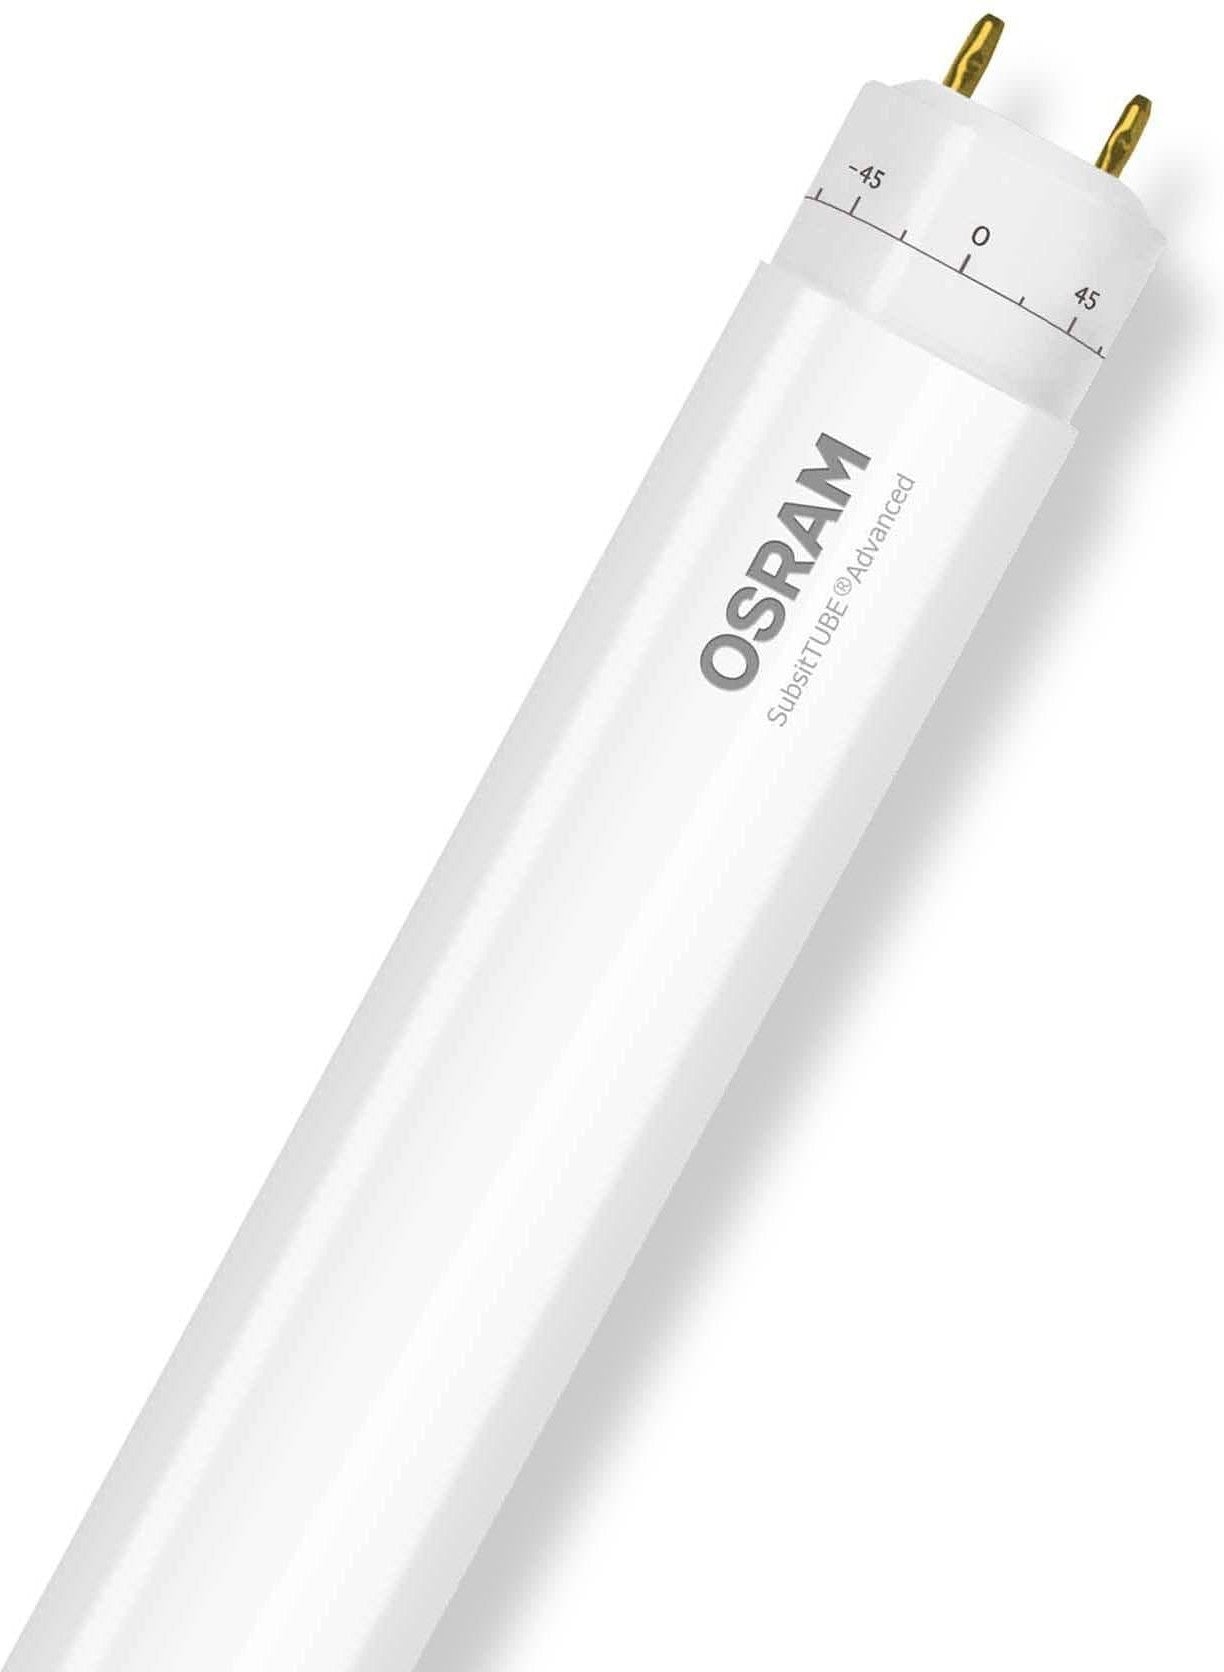 Osram T8 Advanced EM LED Tube Lights for Room x10pcs - DELIGHT OptoElectronics Pte. Ltd